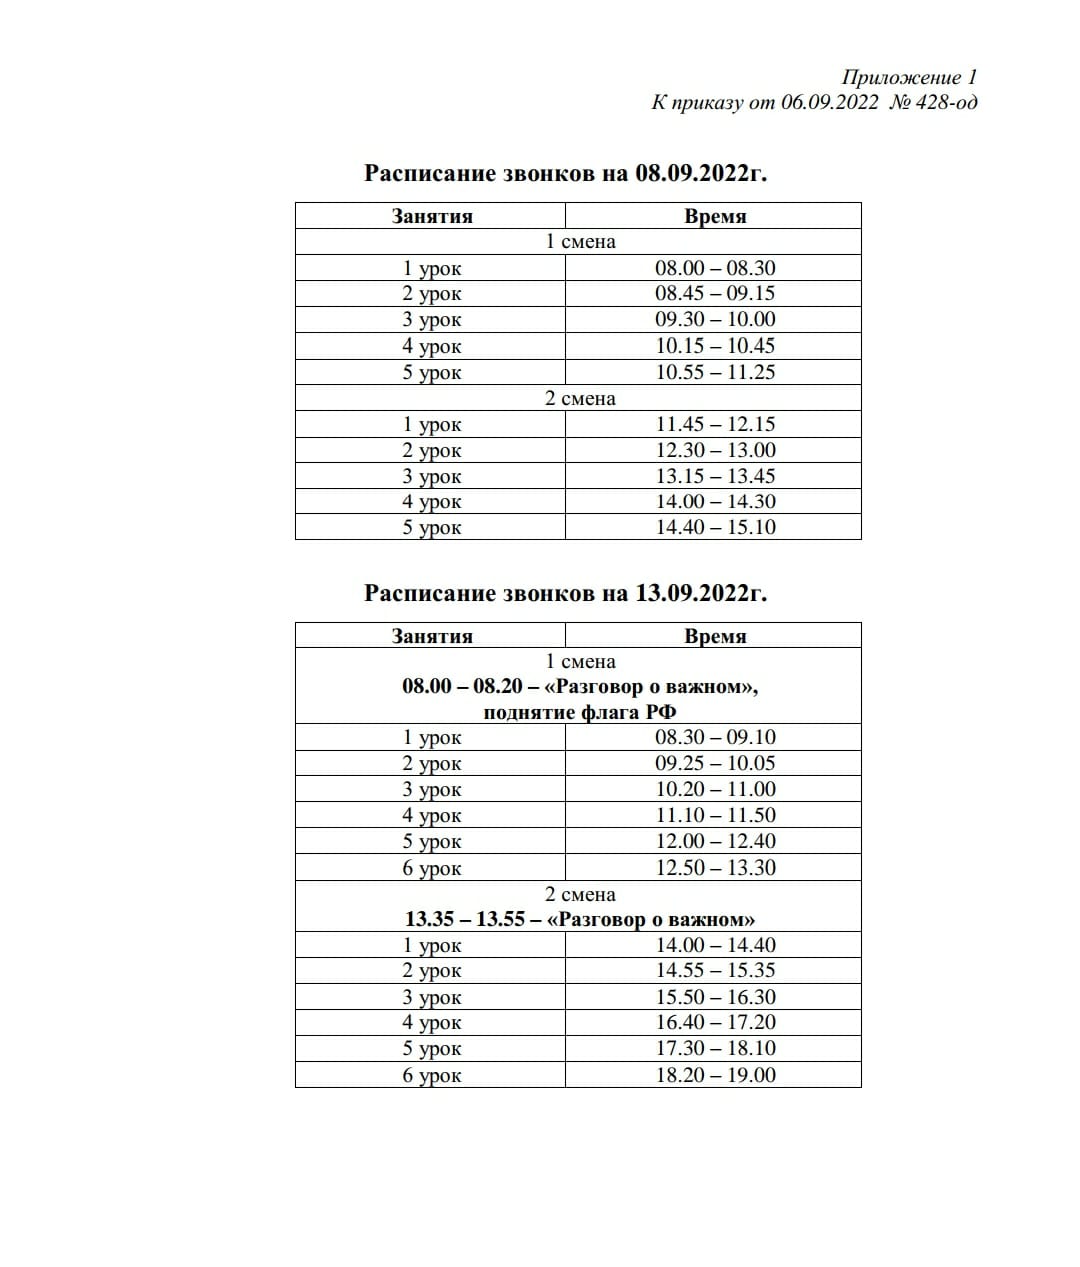 Режим работы школы на 8.09 и 13.09